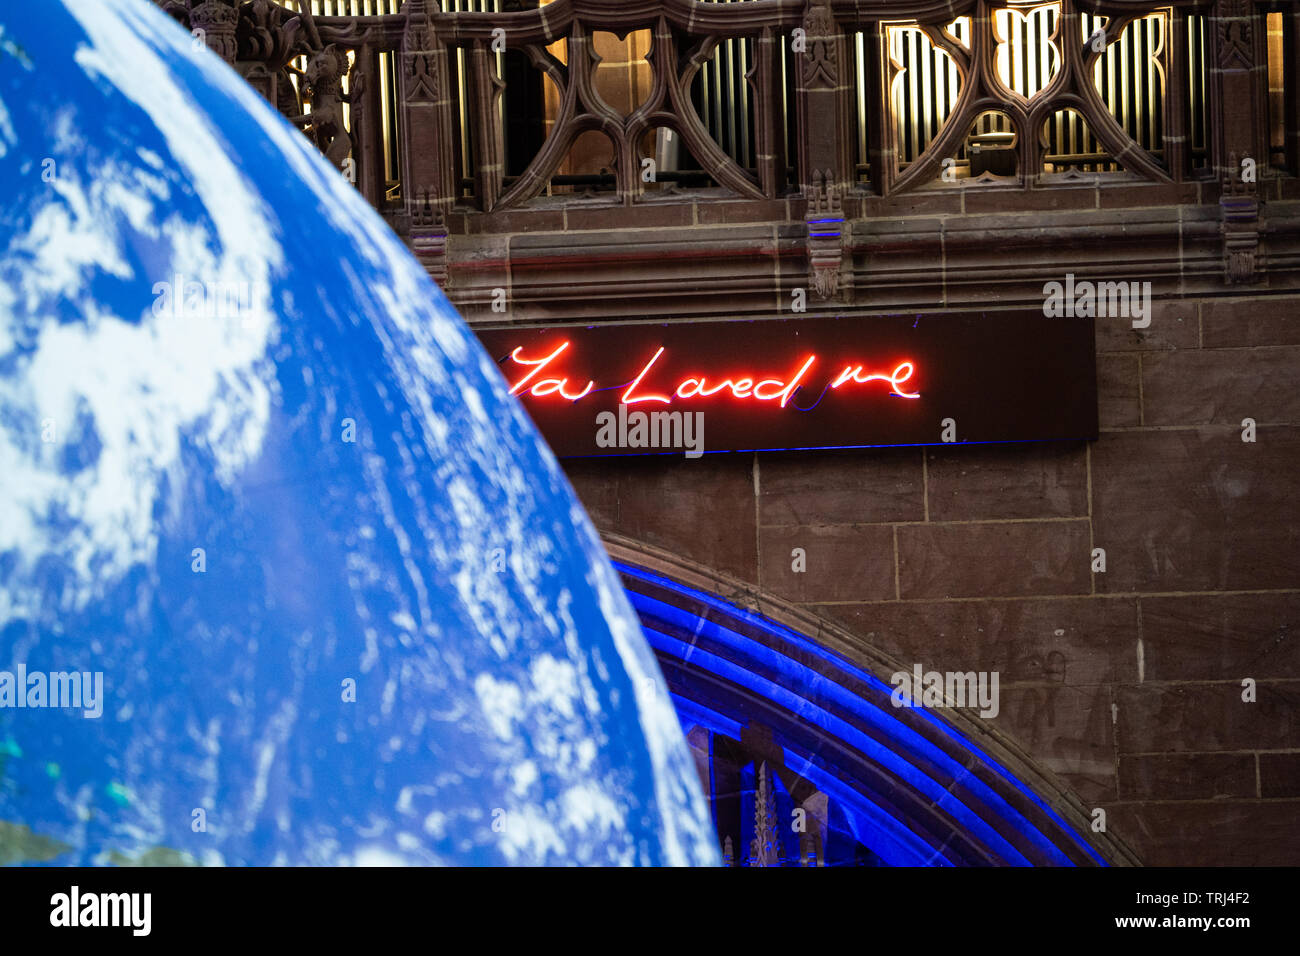 Gaia, 23 ft Replik der Erde, nach Künstler Luke Jerram, in der Kathedrale von Liverpool, Liverpool, UK angezeigt. Leuchtreklame sagt "Du mich geliebt" Stockfoto